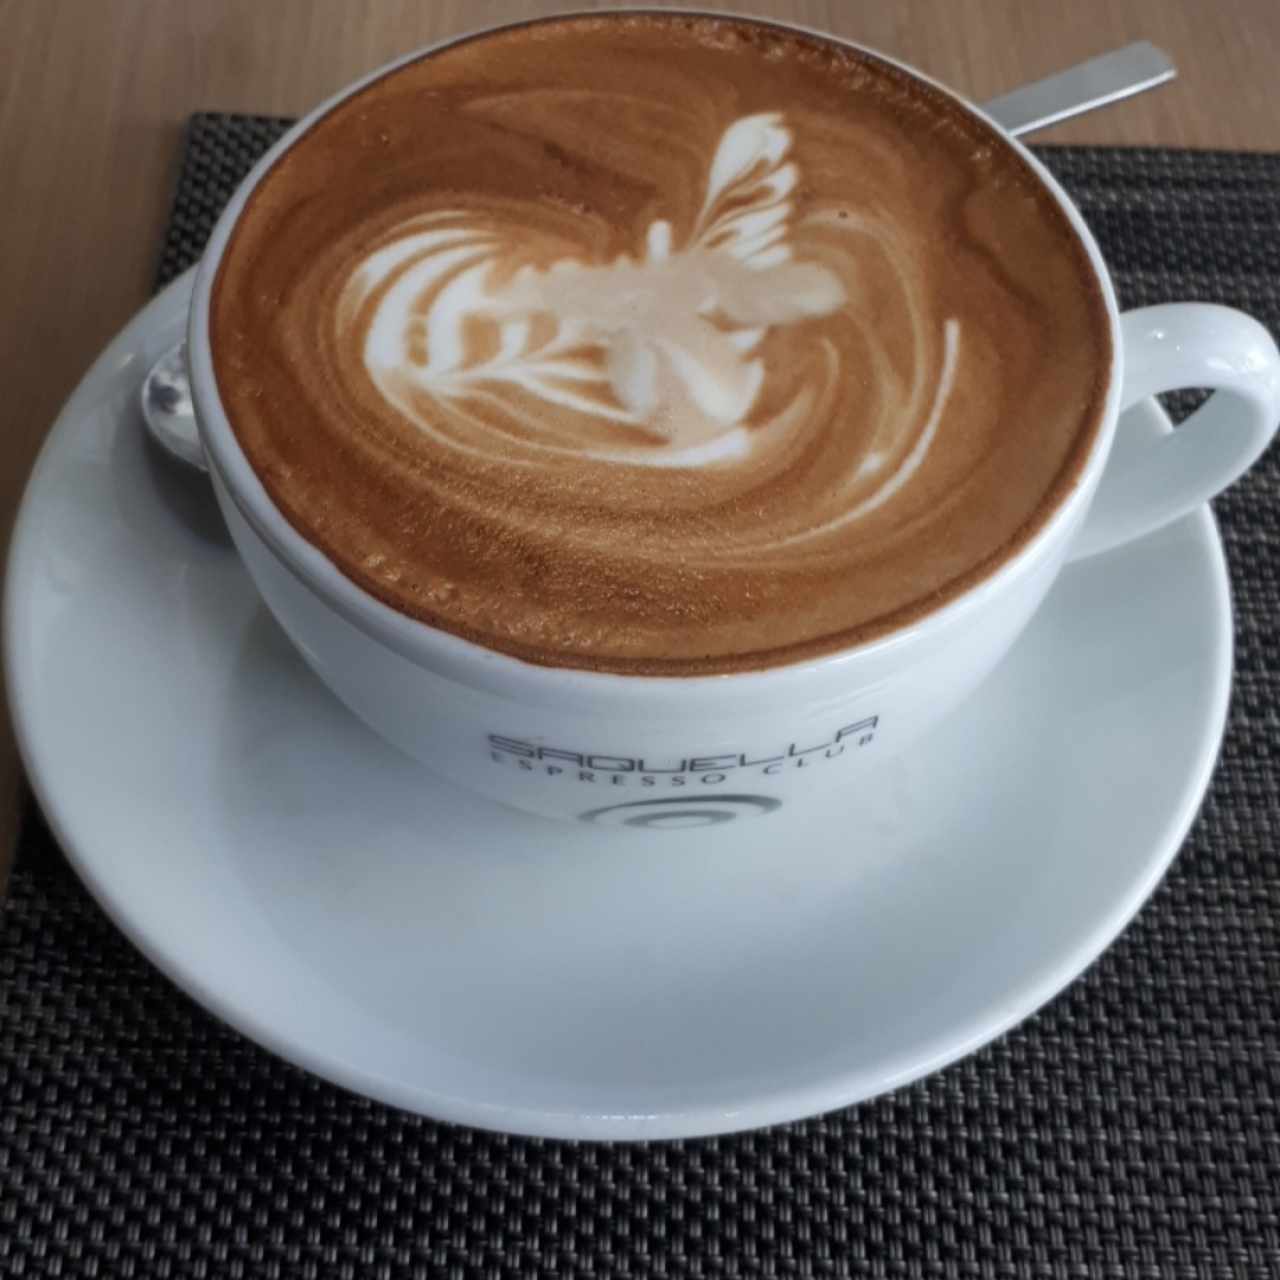 Cappuccino Café